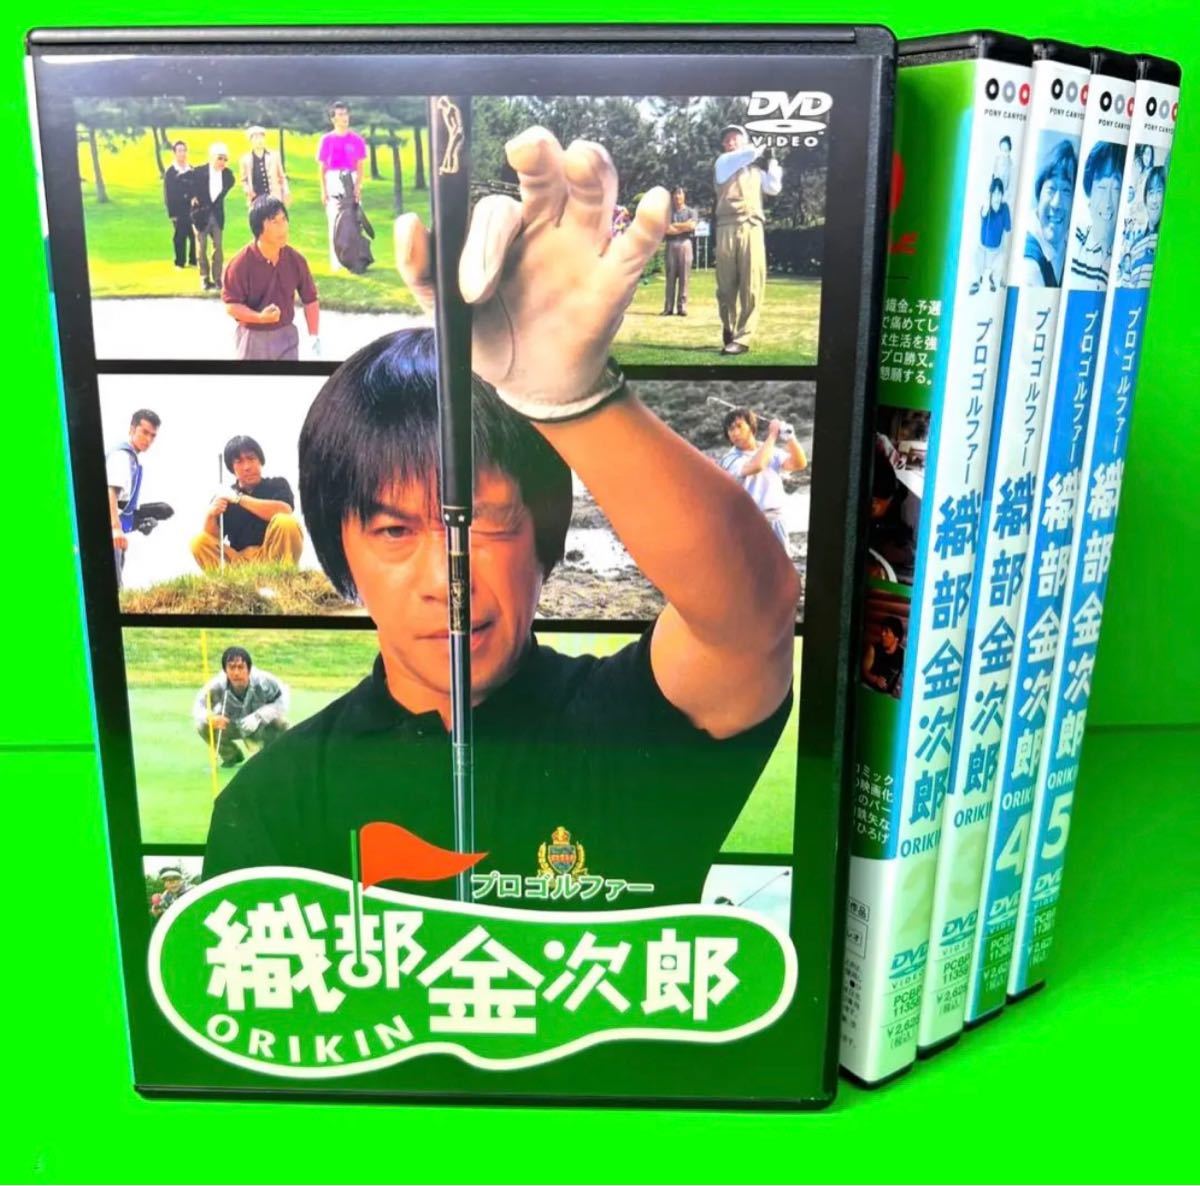 Yahoo!オークション -「プロゴルファー織部金次郎」(DVD) の落札相場 